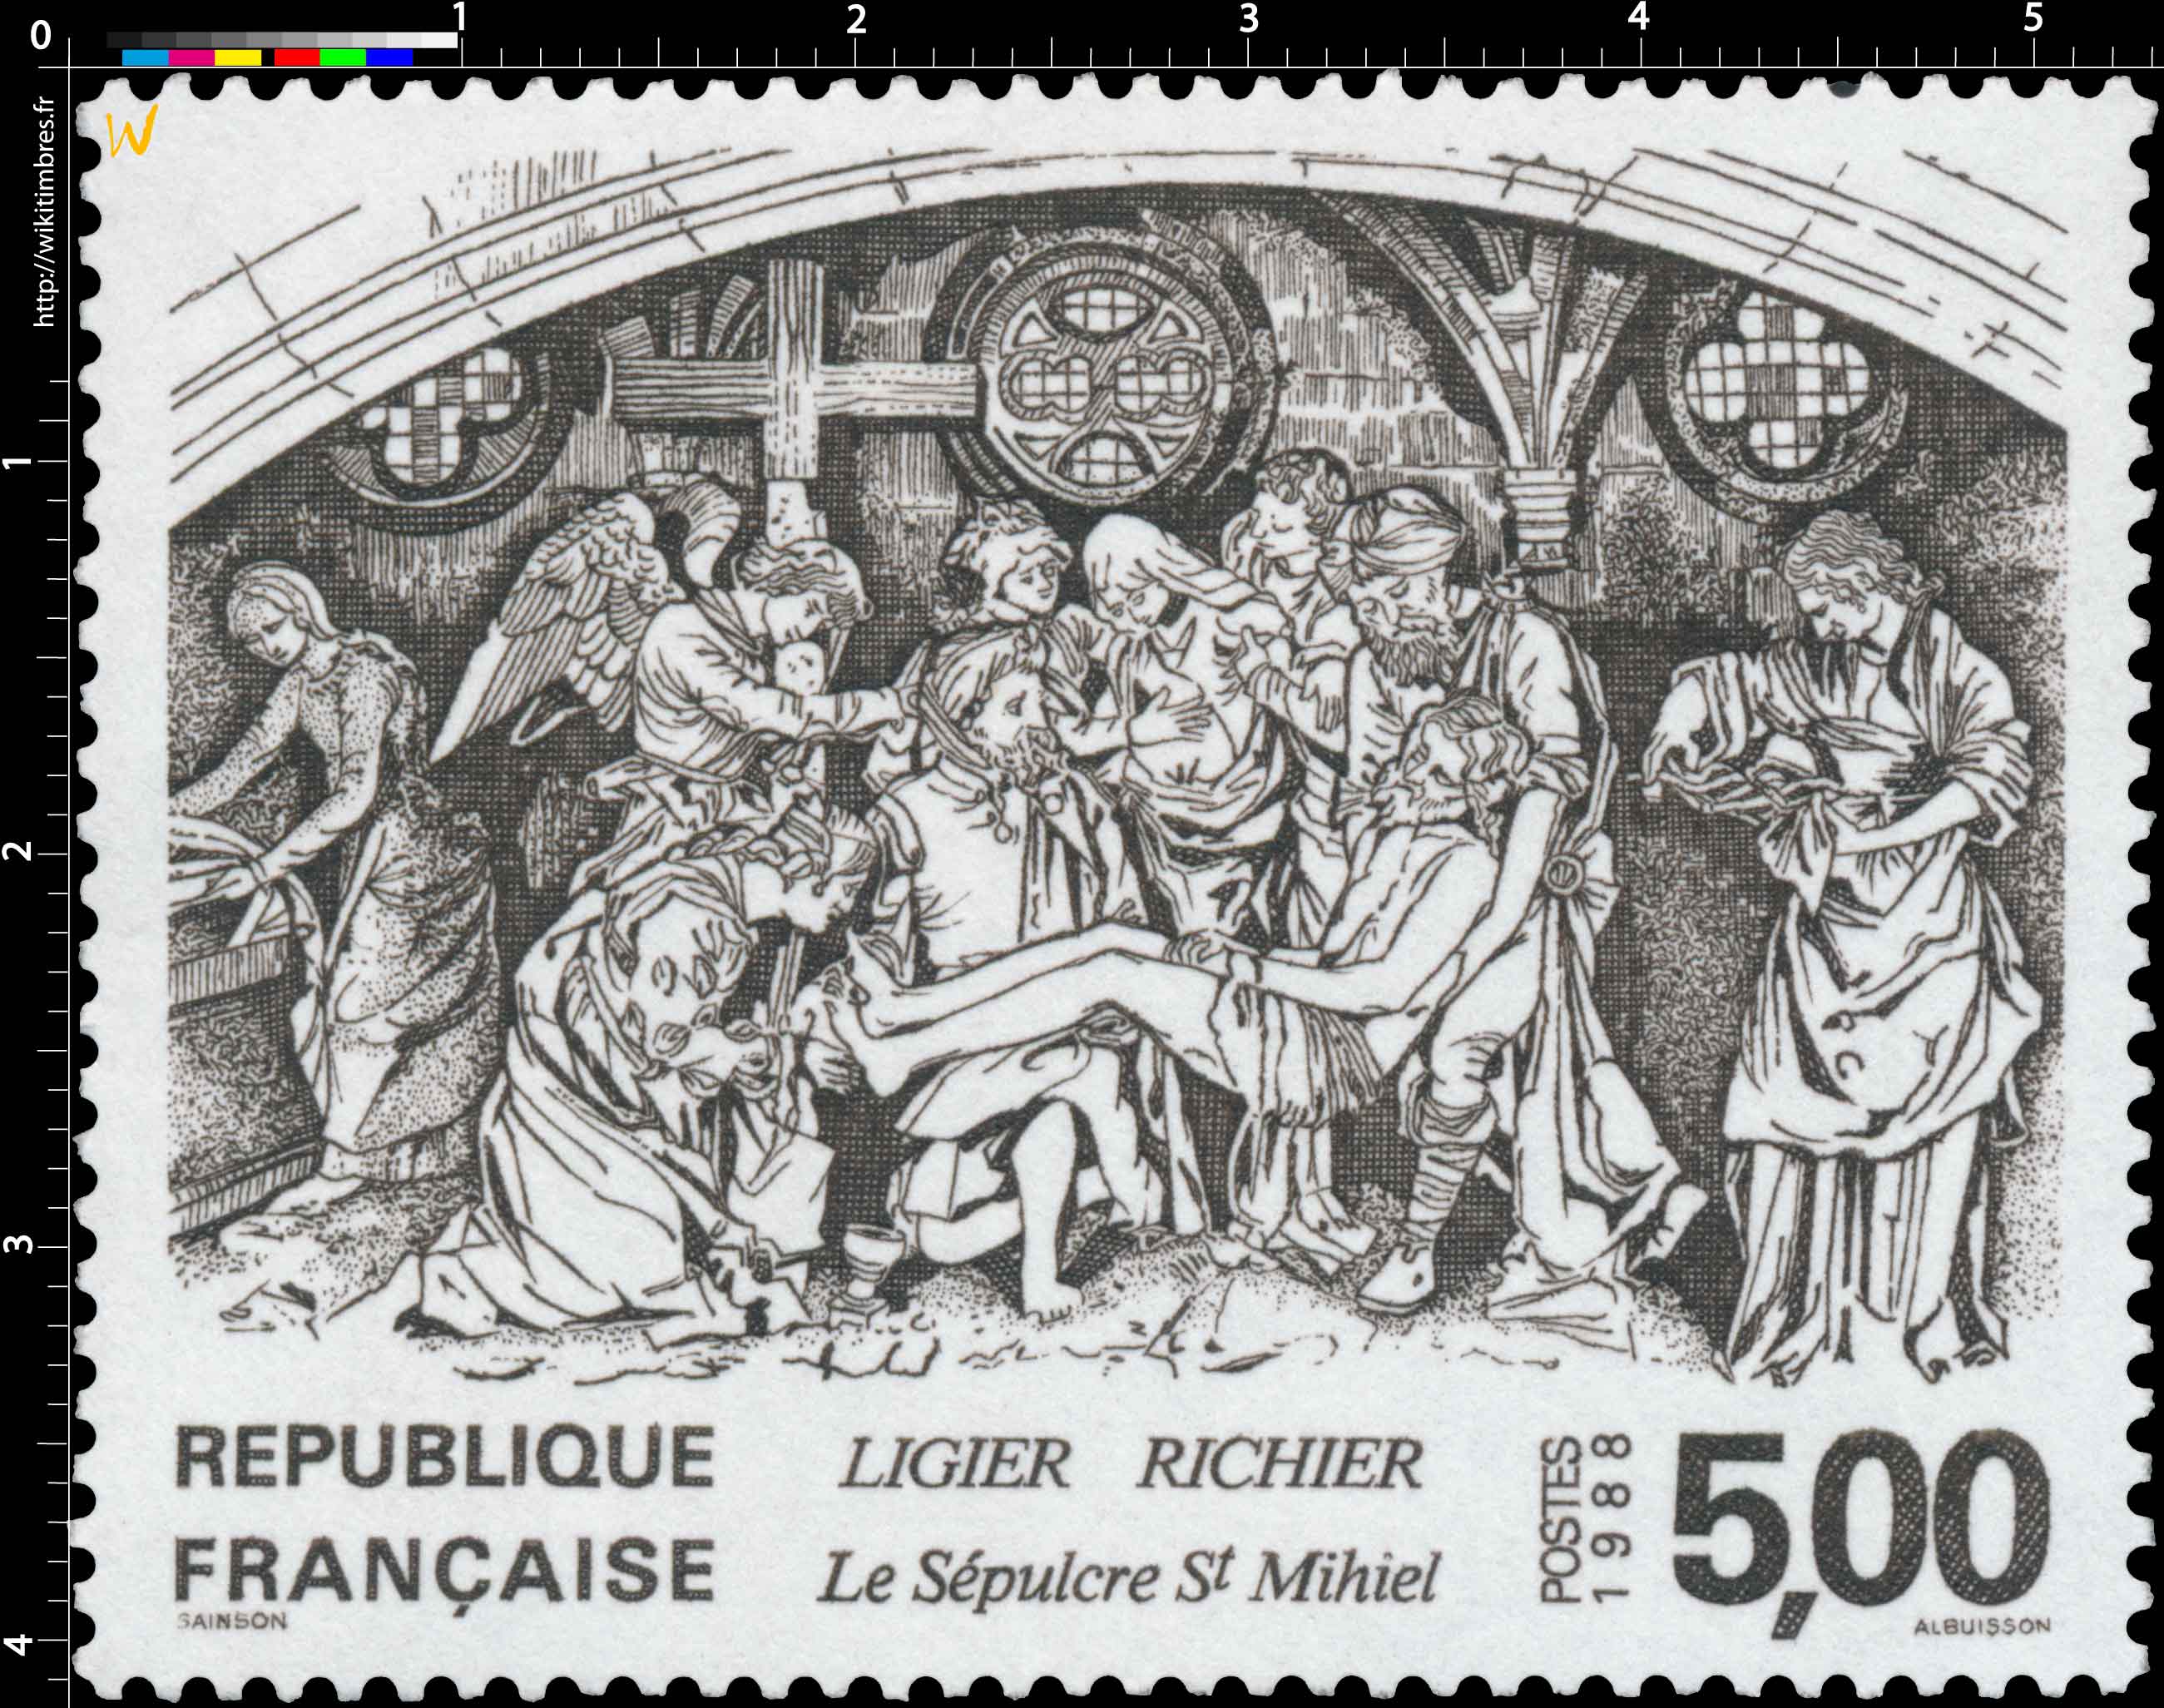 1988 LIGIER RICHIER Le Sépulcre St-Mihiel